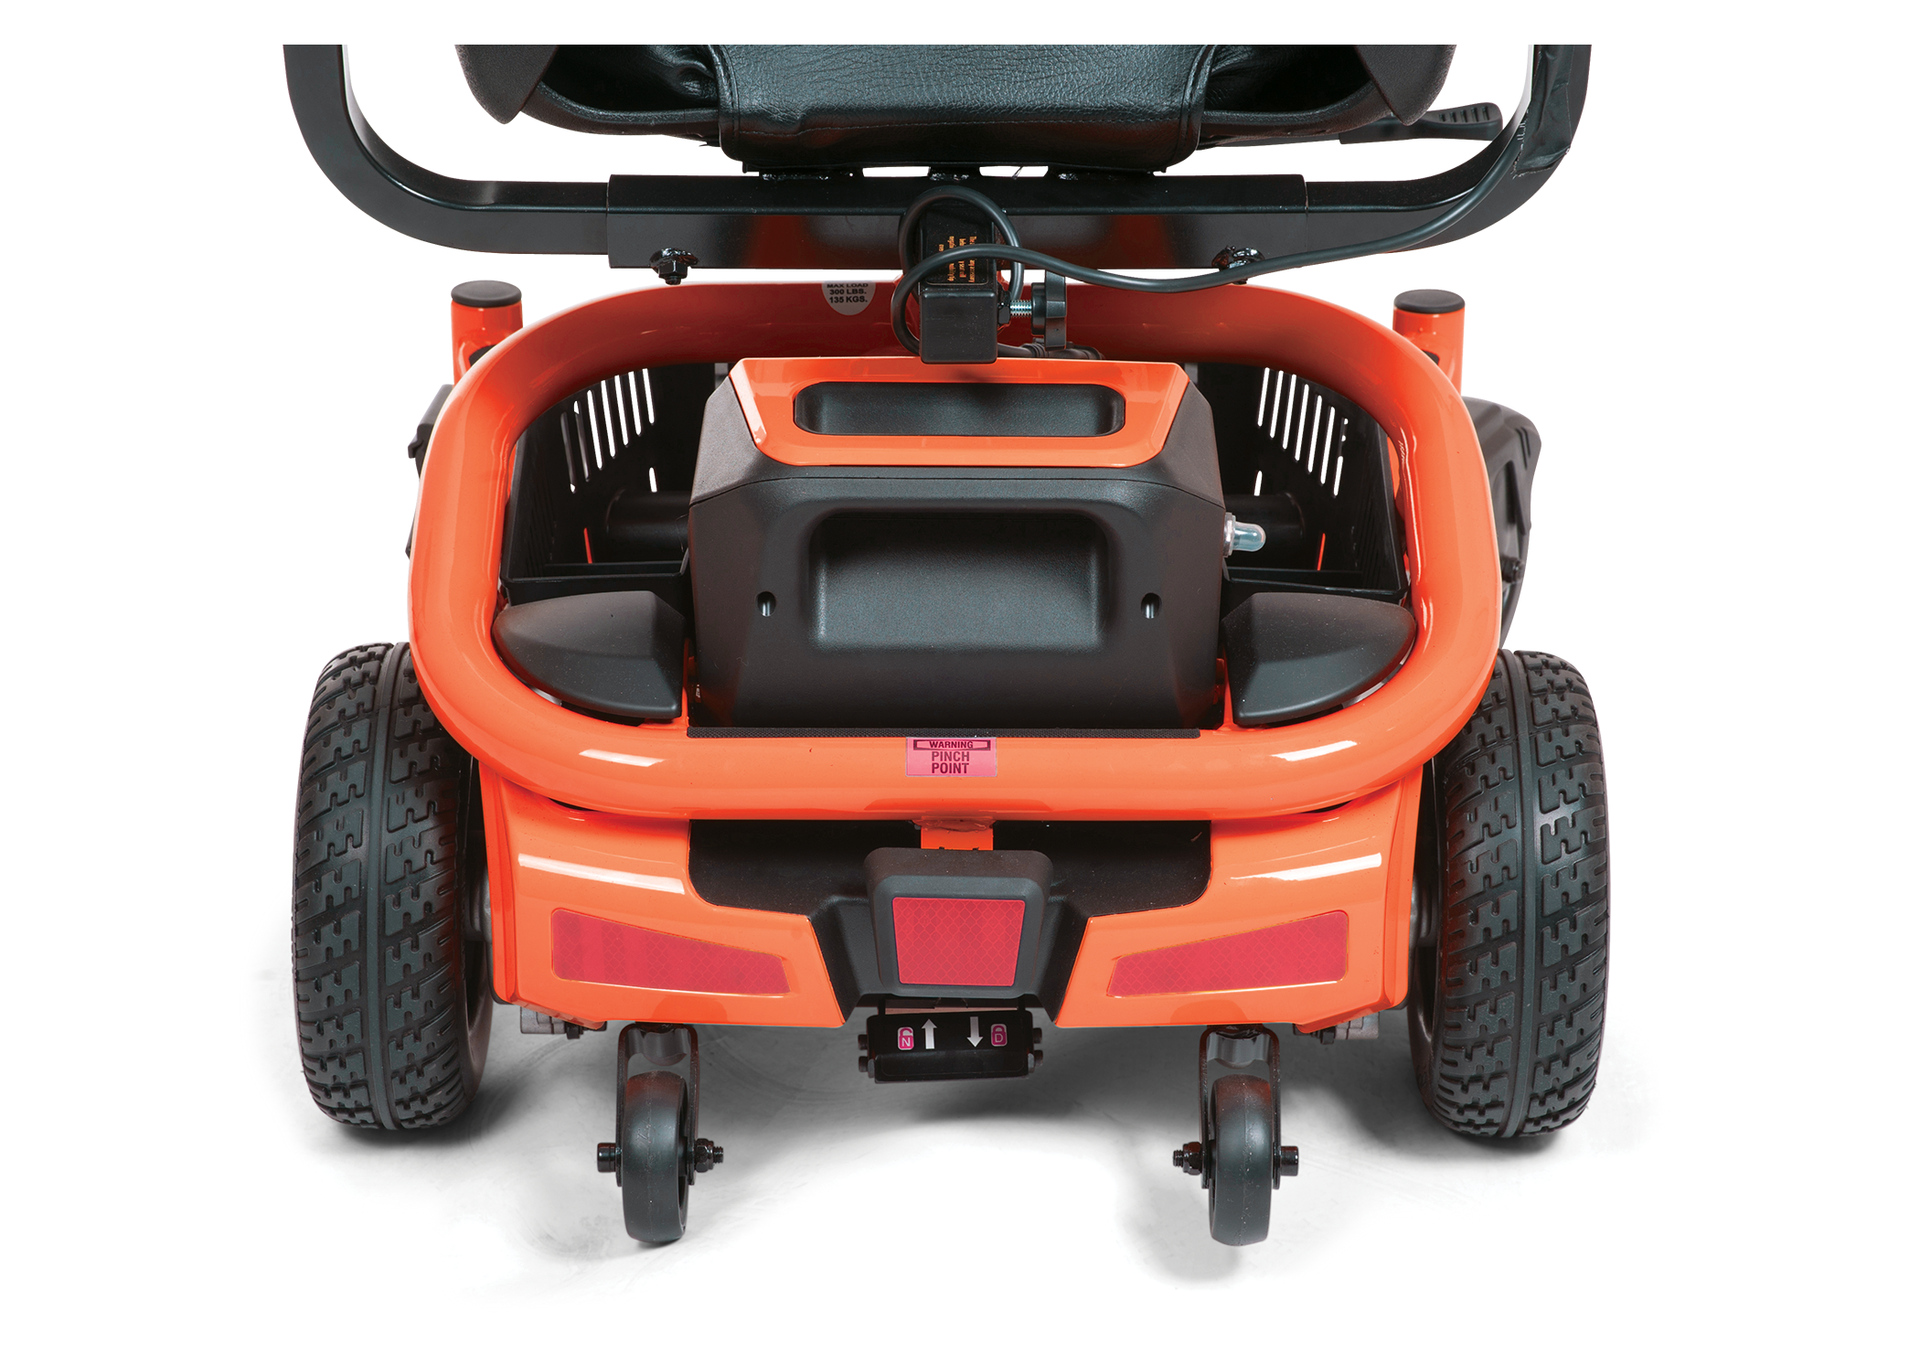 Lightrider Power wheelchair orange